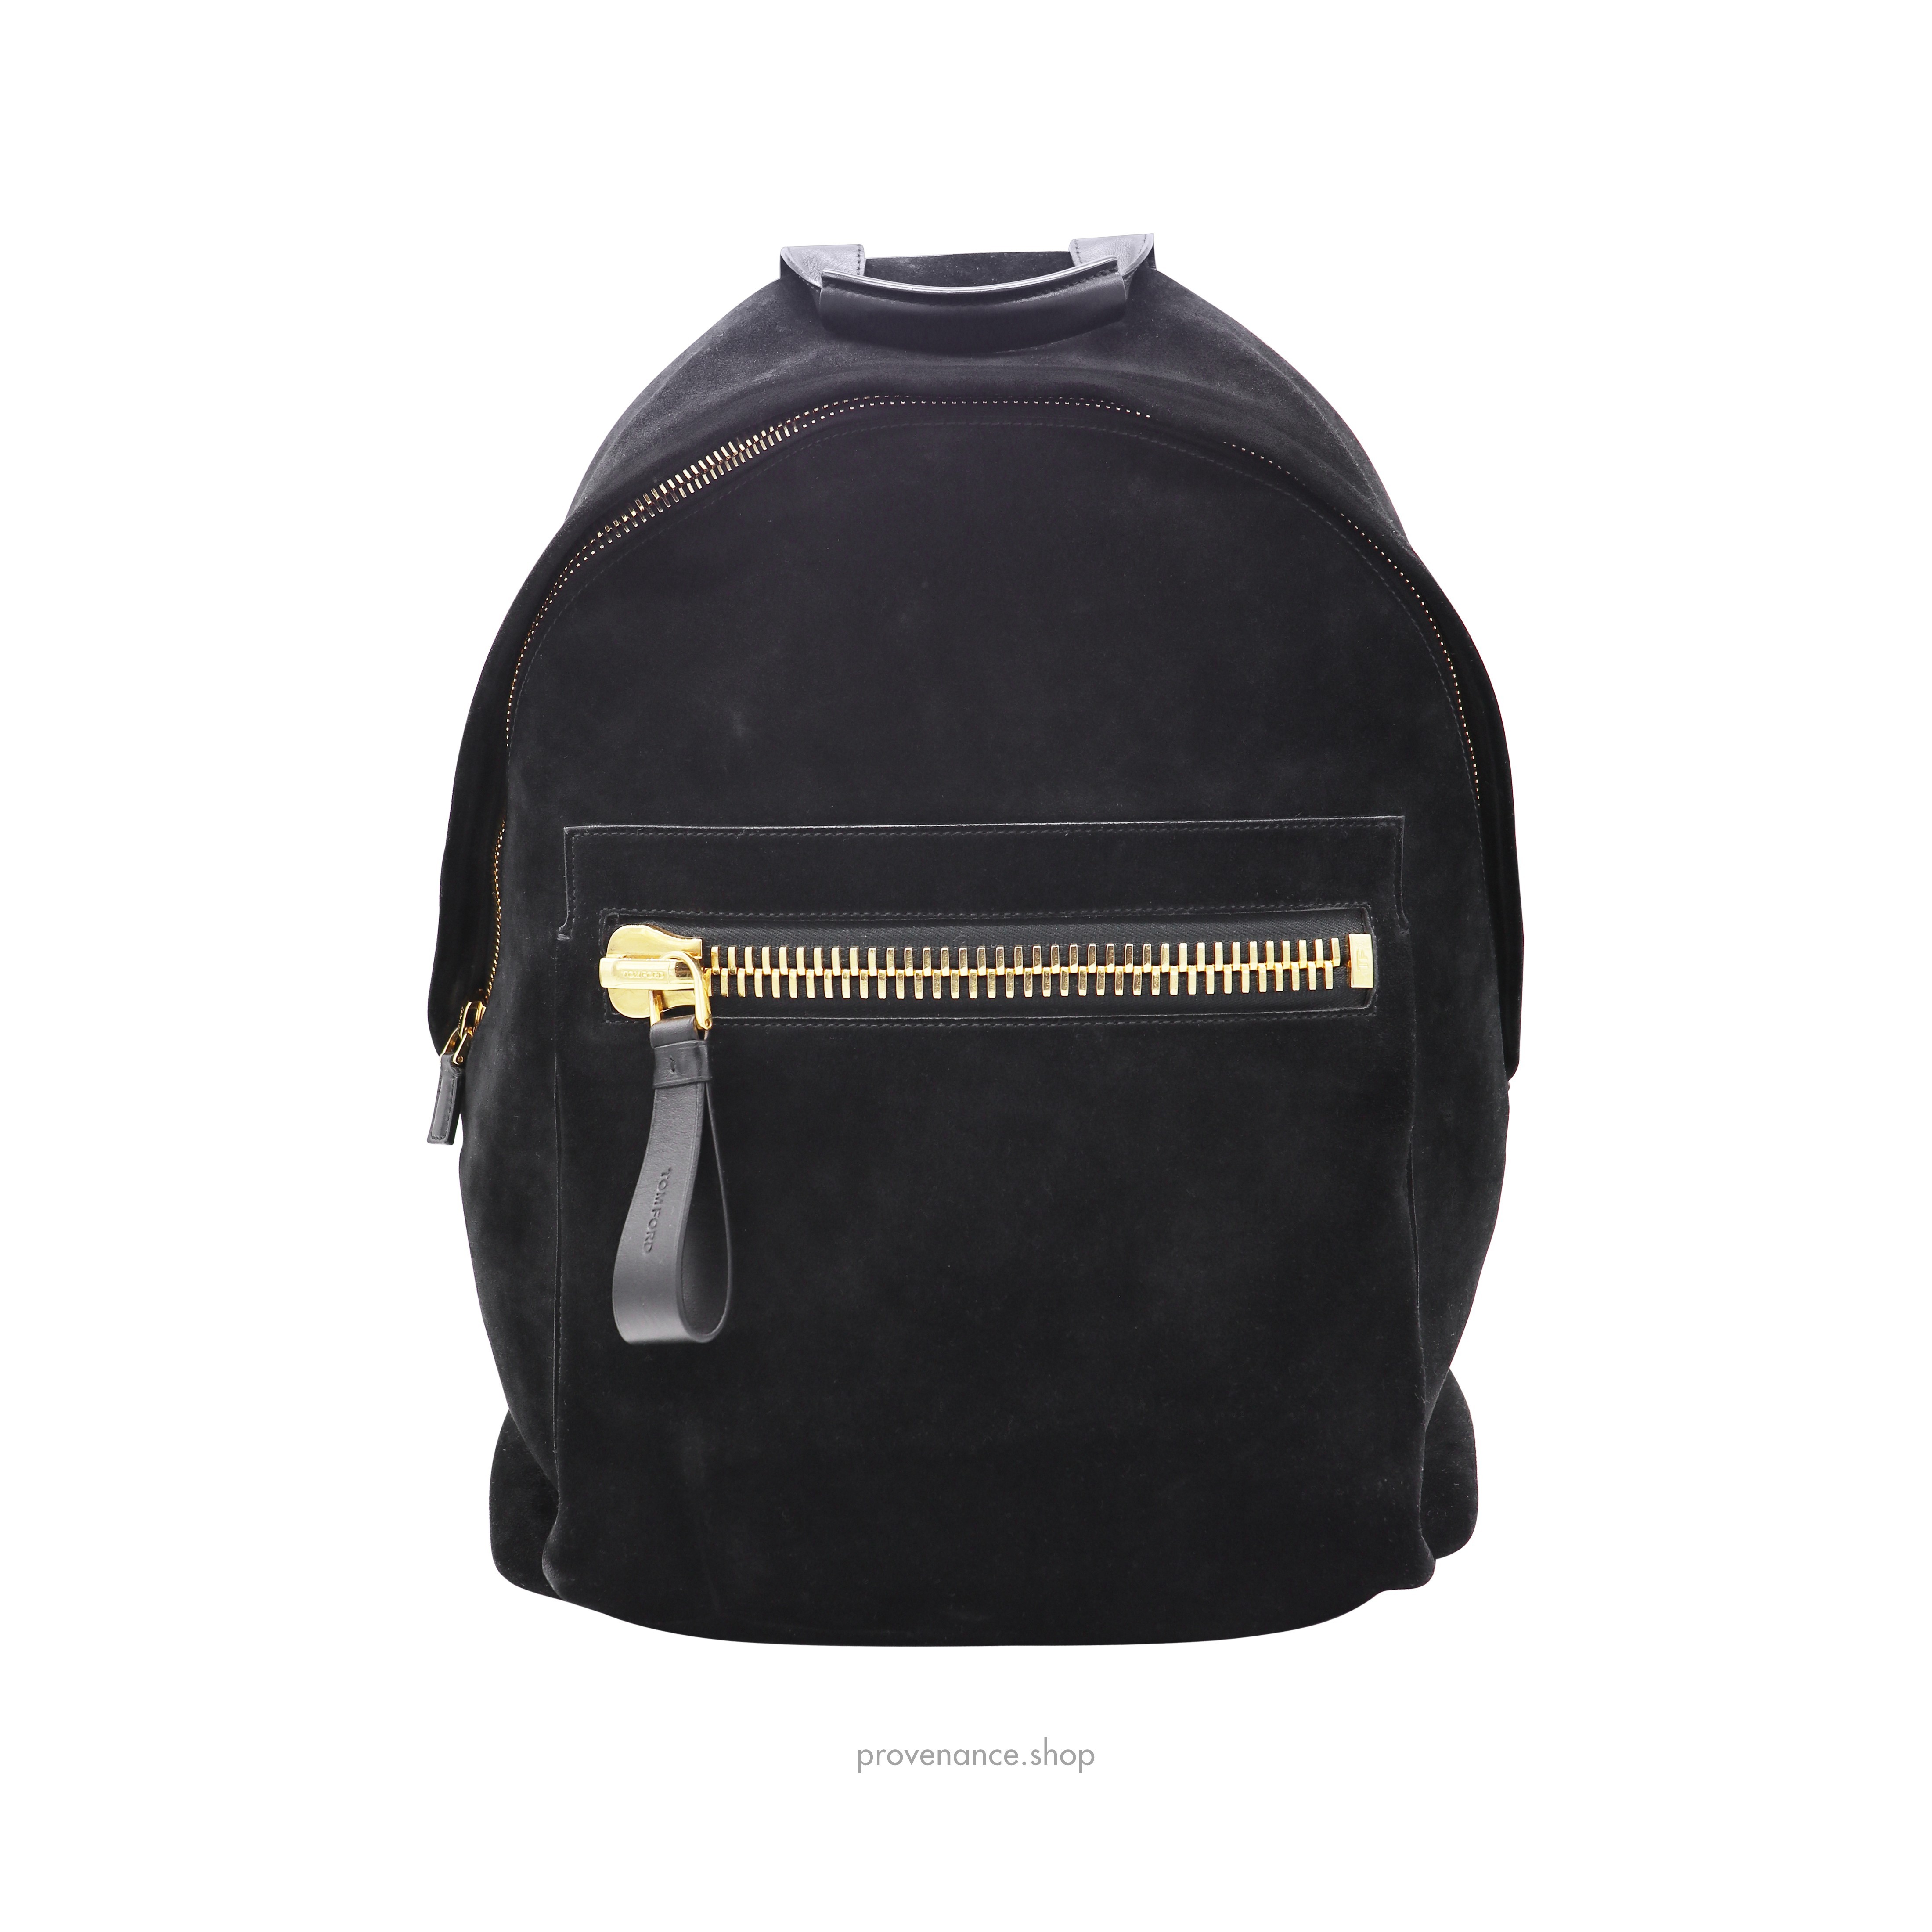 Buckley Backpack Bag - Black Suede - 3